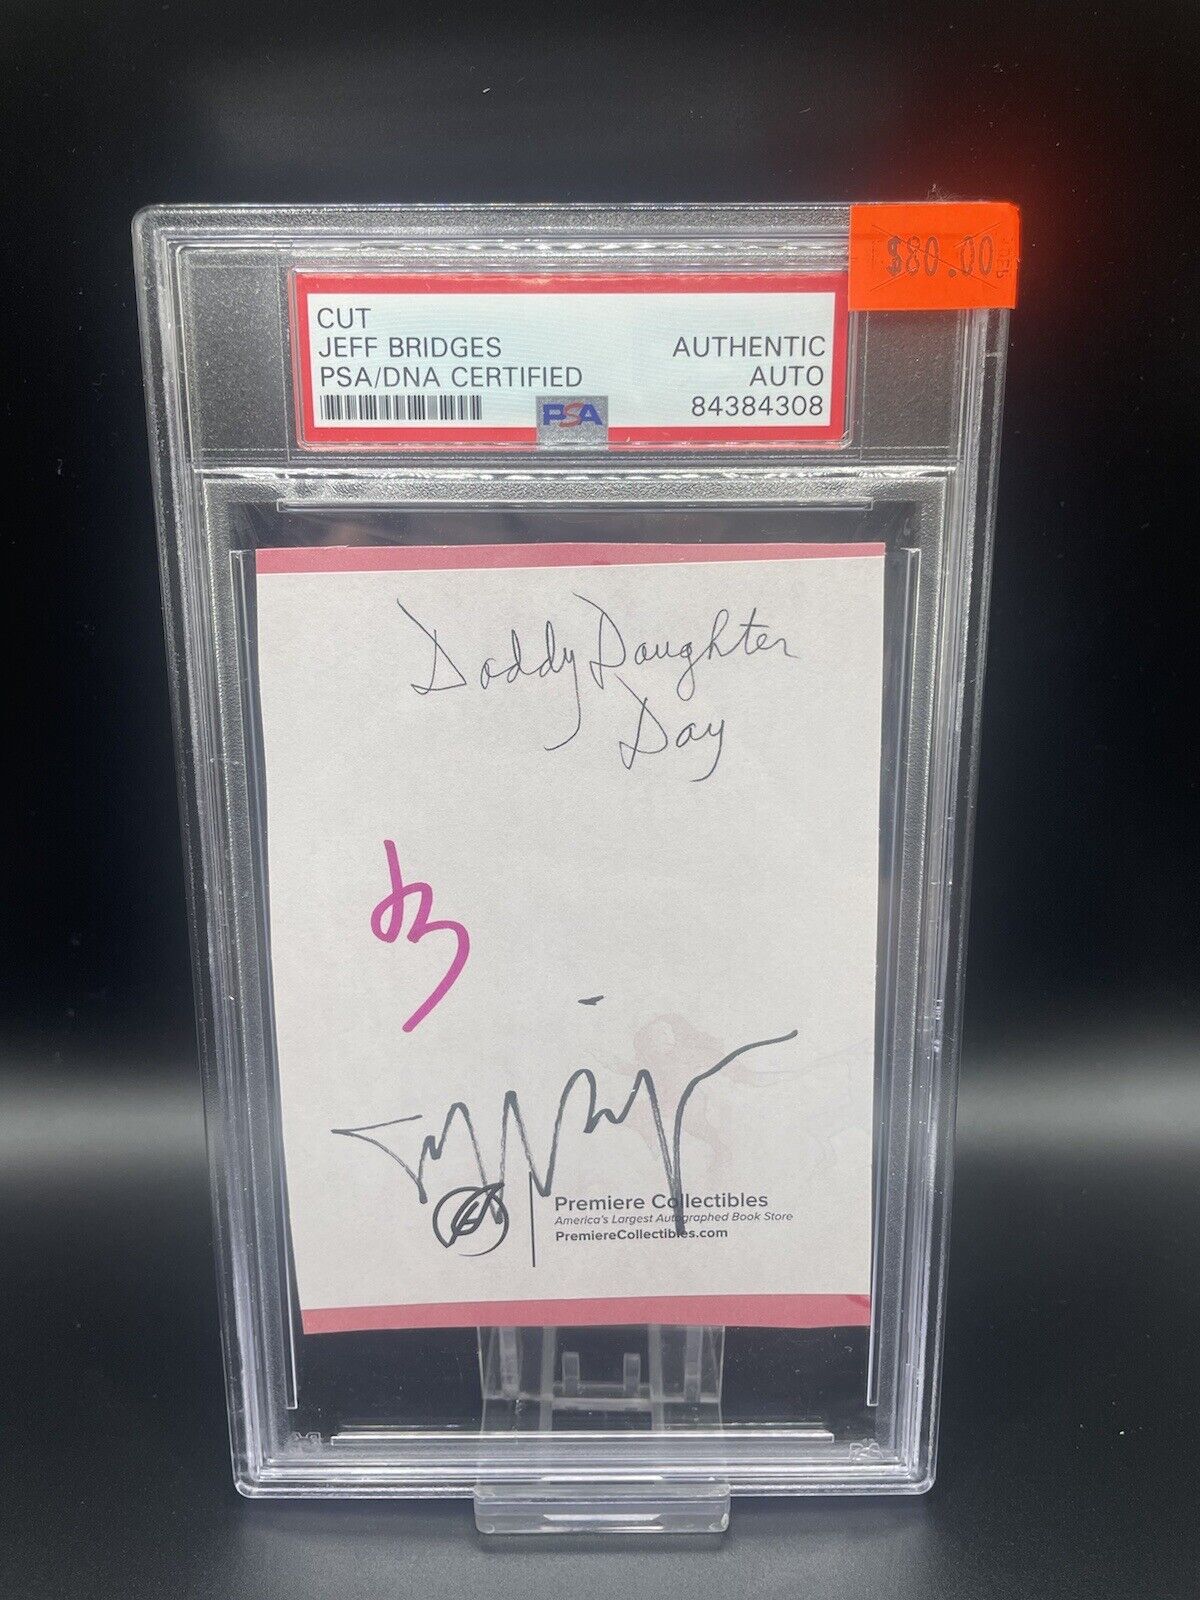 Jeff Bridges PSA/DNA Certified Autograph Signed Cut